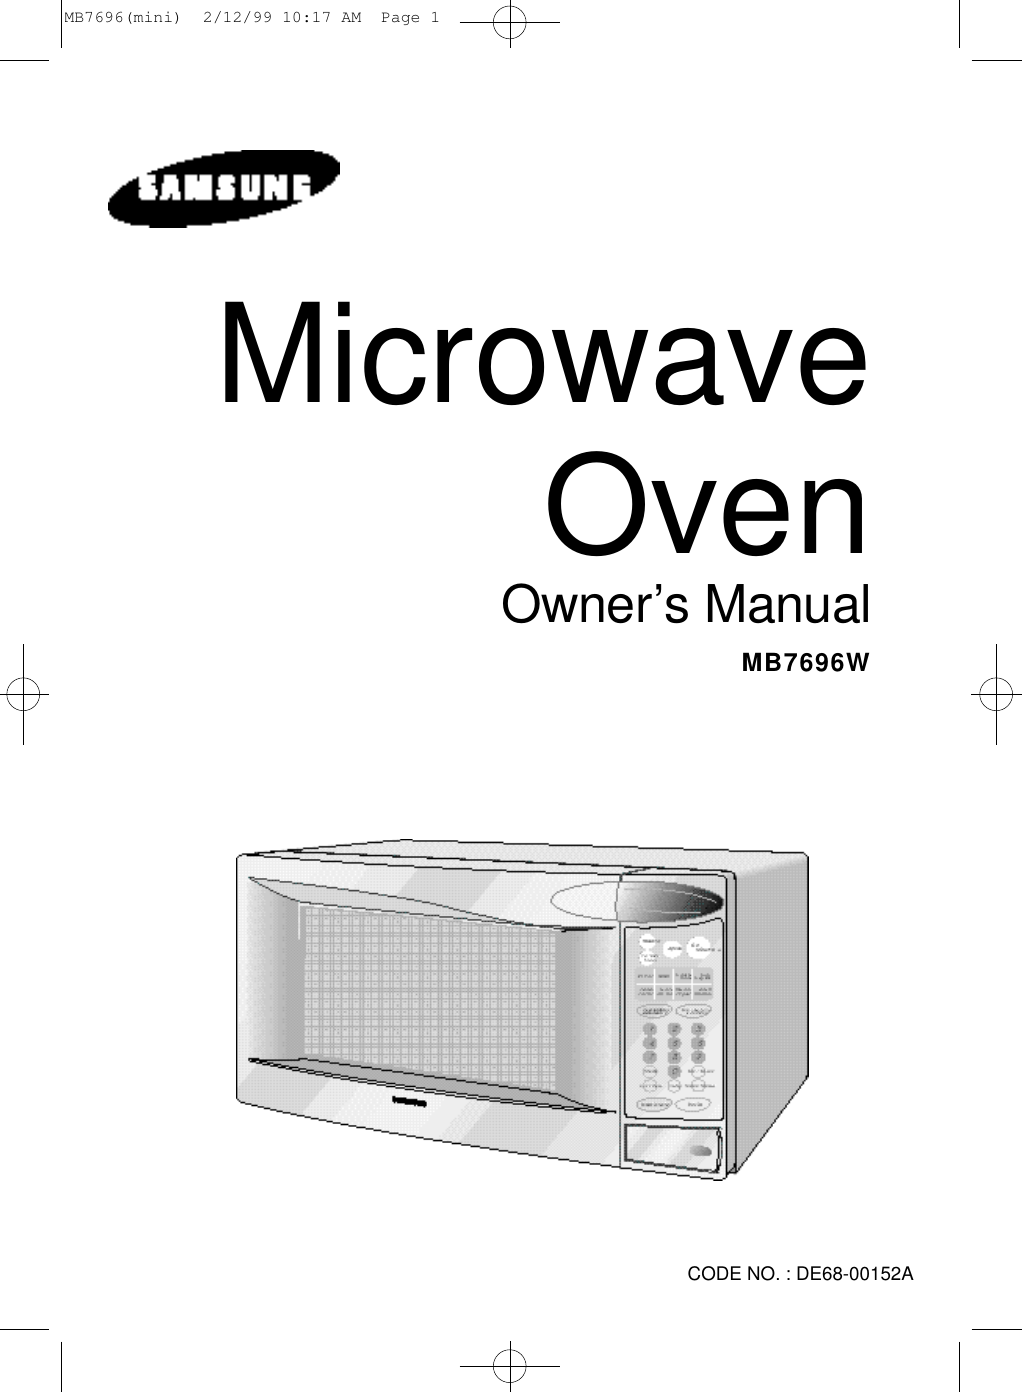 M B 7 6 9 6 WMicrowave OvenO w n e r’s ManualCODE NO. : DE68-00152AMB7696(mini)  2/12/99 10:17 AM  Page 1